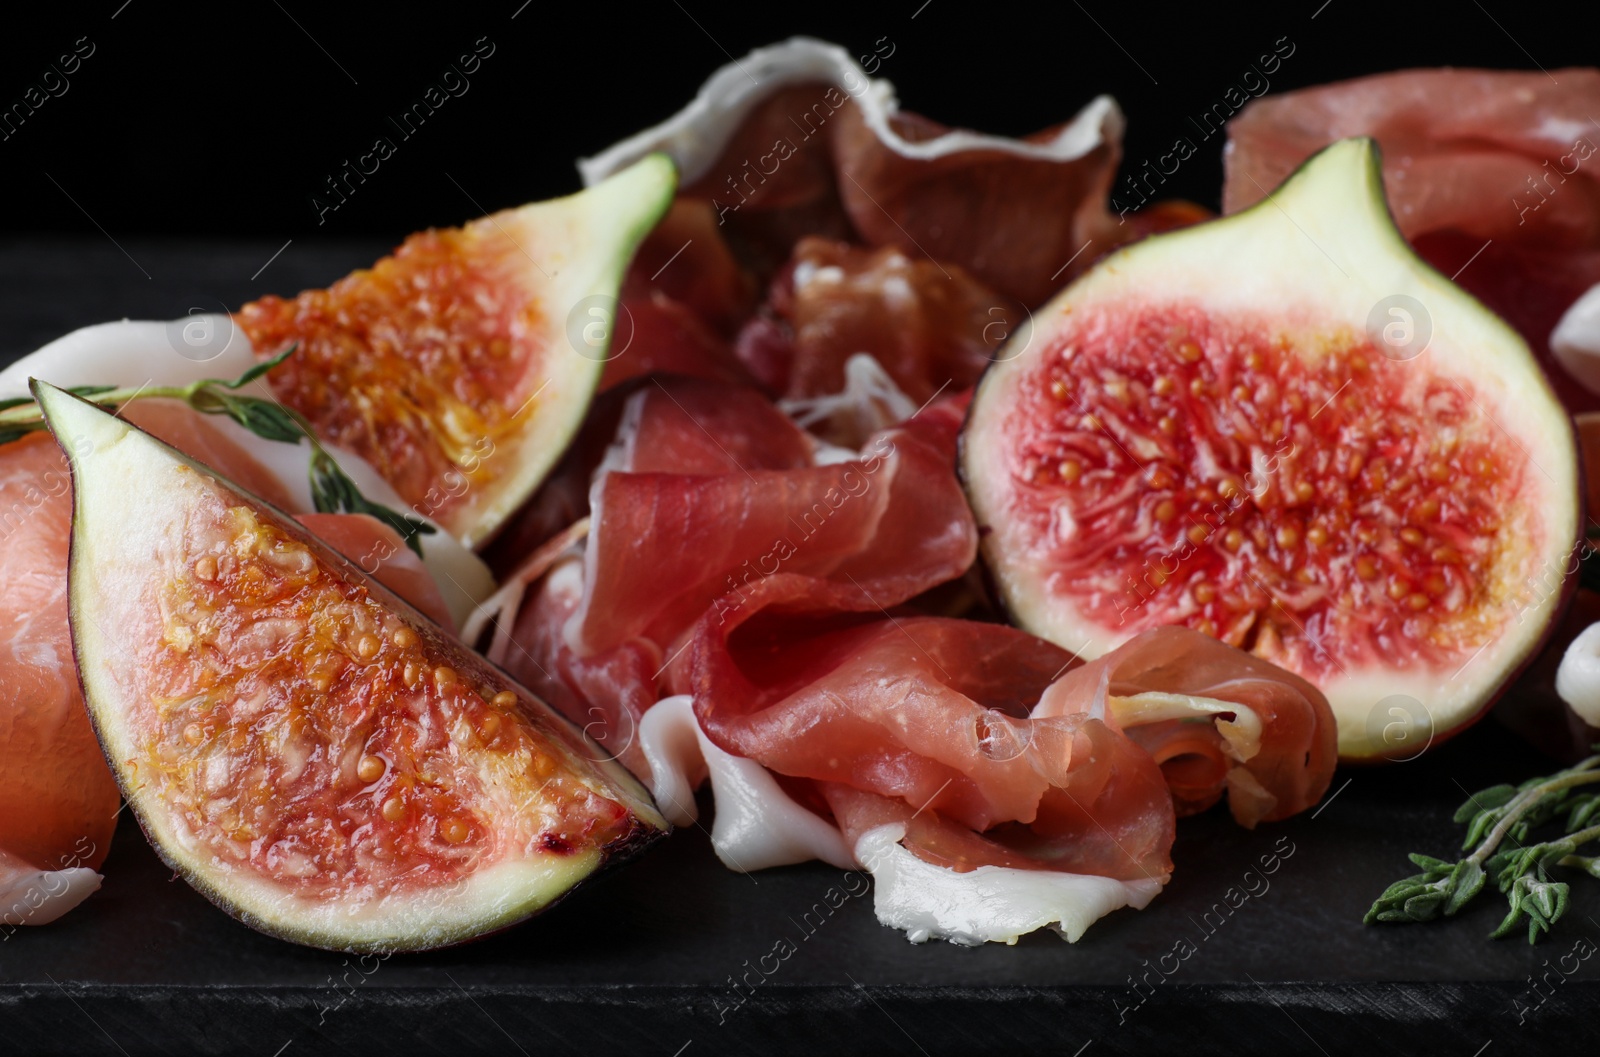 Photo of Delicious ripe figs and prosciutto served on slate board, closeup